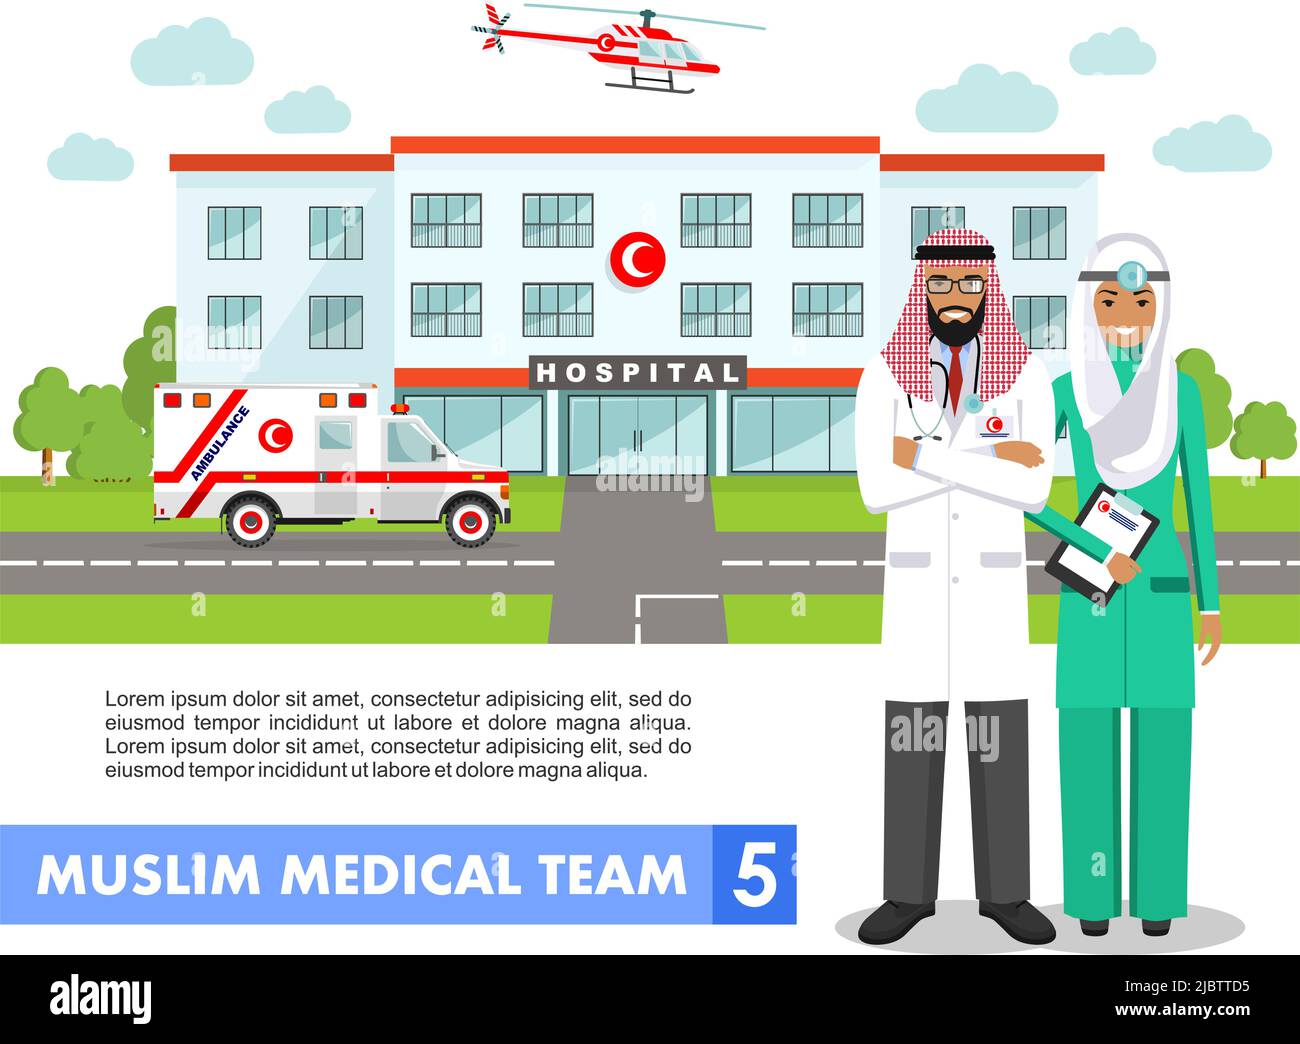 Detaillierte Darstellung von muslimischen arabischen Mitarbeitern, medizinischem Hubschrauber, Ambulanzwagen und Krankenhausgebäude in flachem Stil auf weißem Hintergrund Stock Vektor